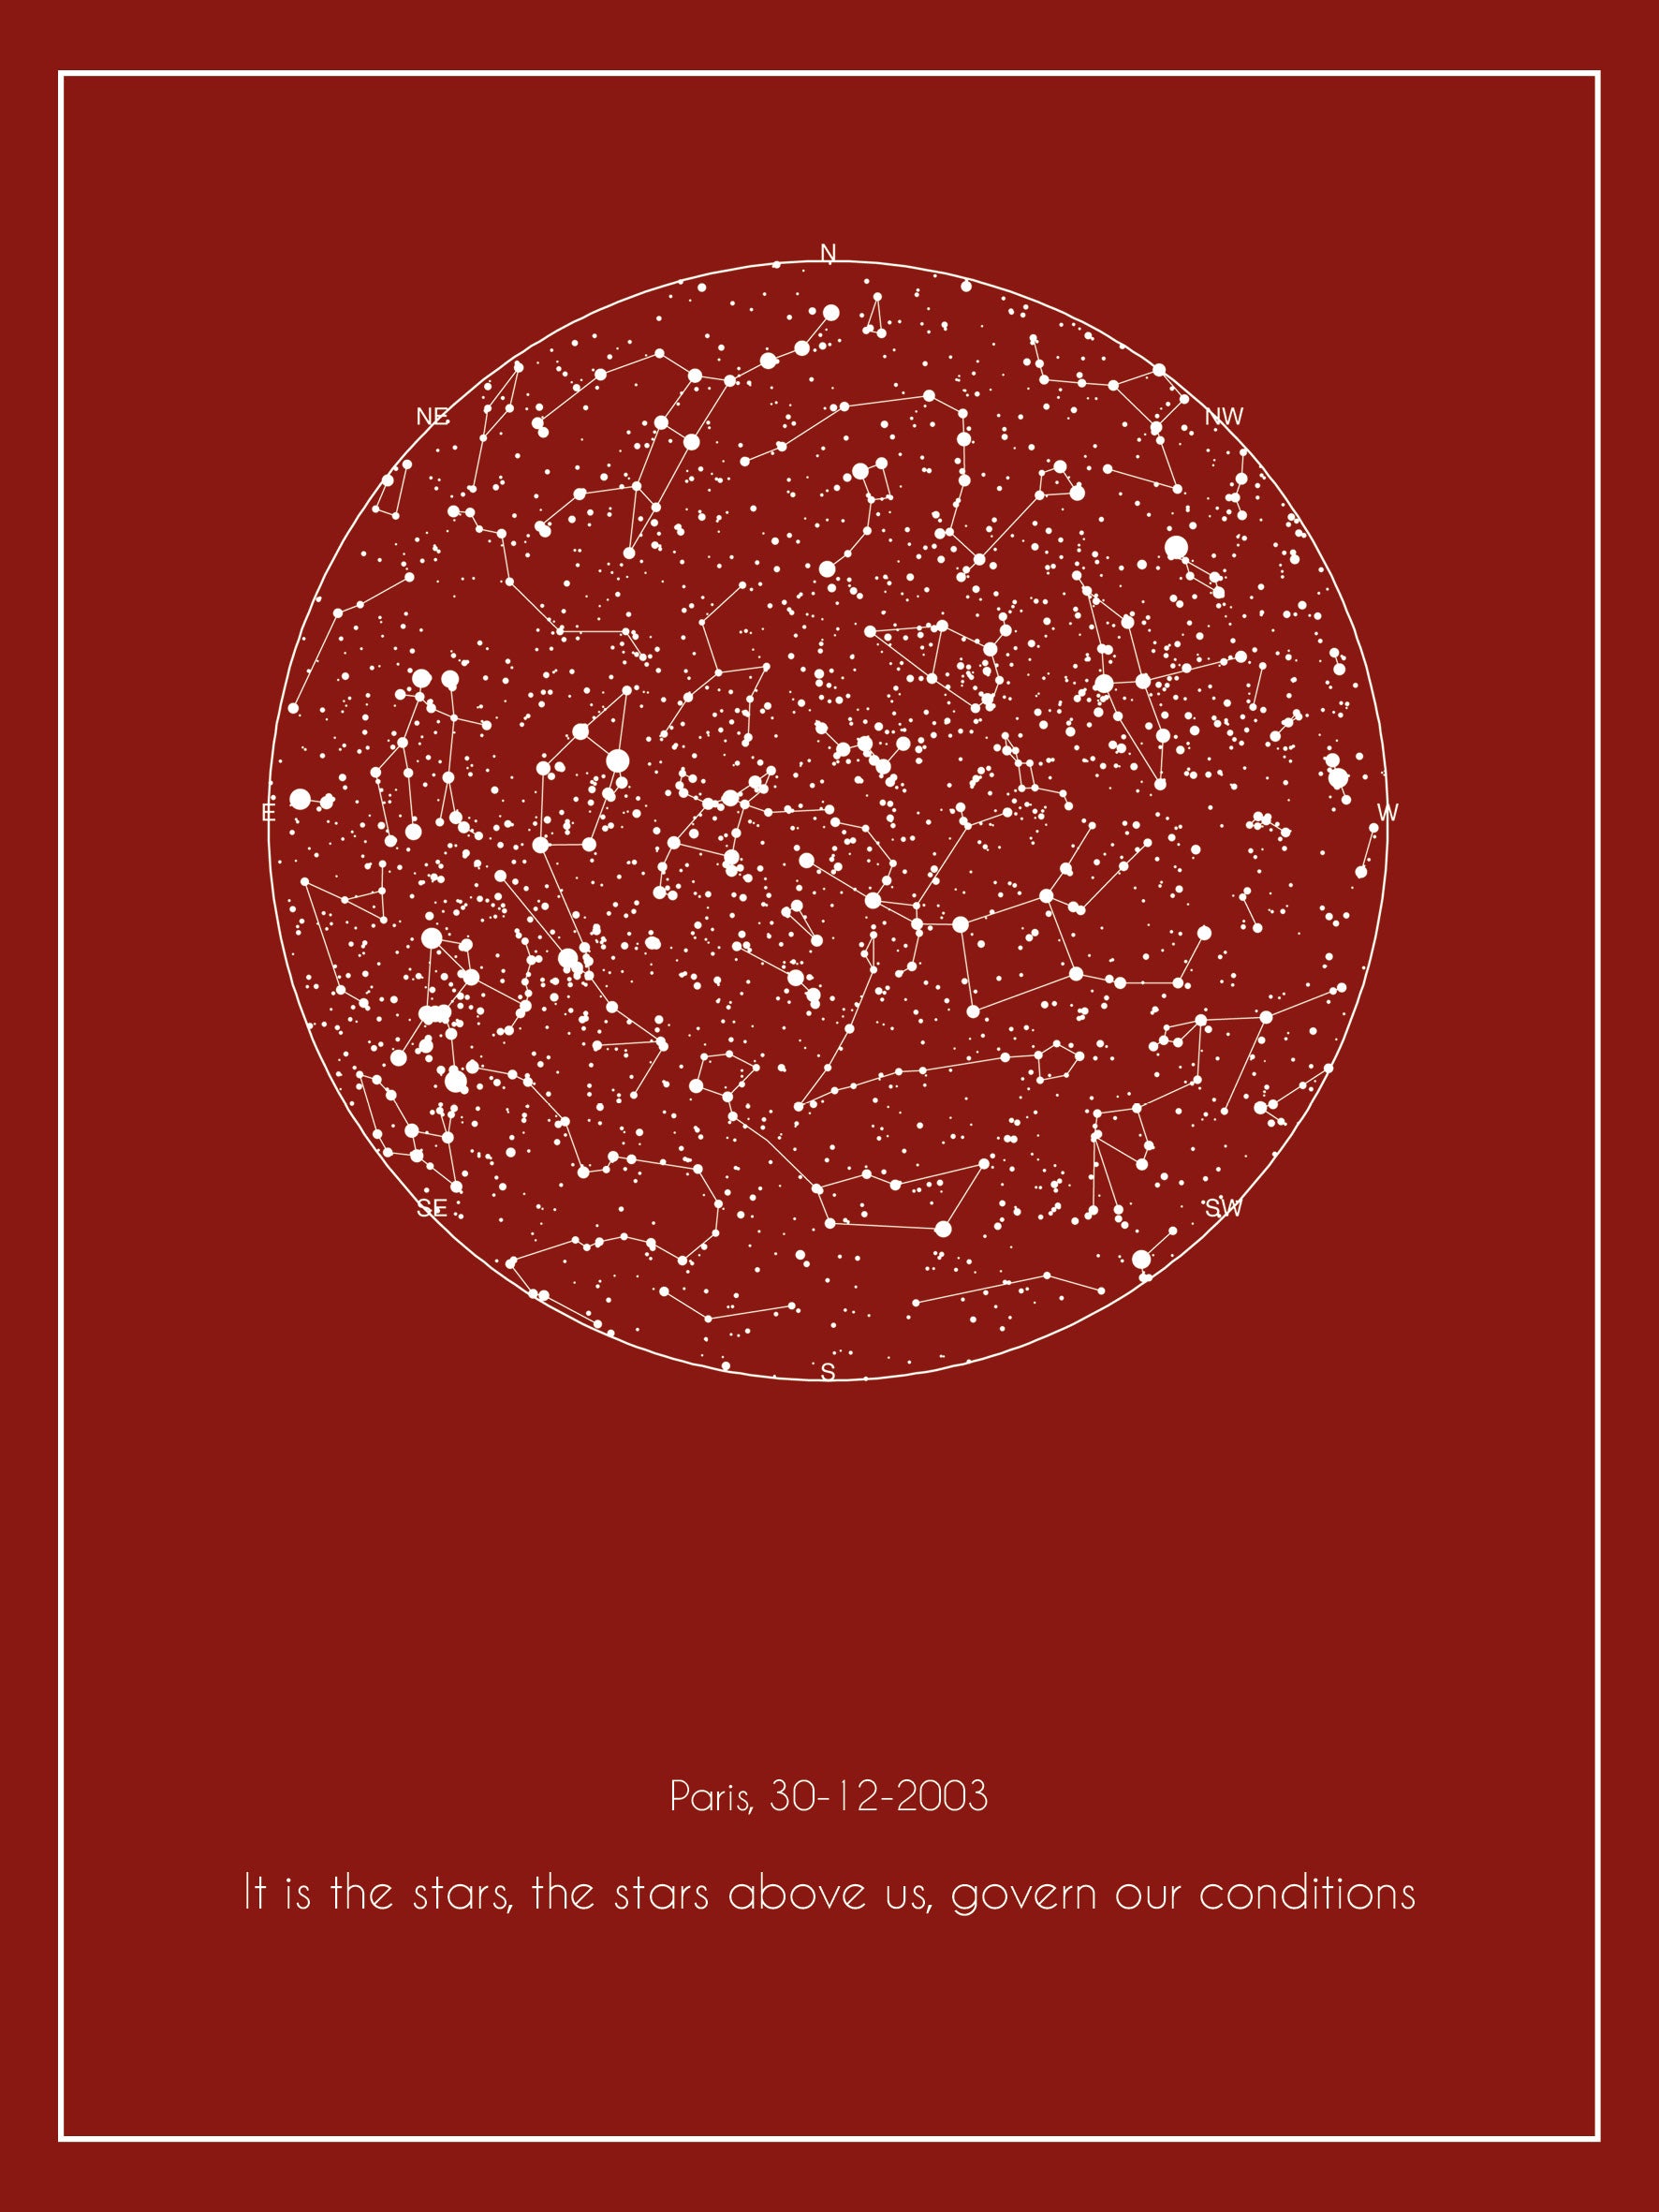 Mappa stellare 30x40 cm senza nomi costellazioni con bordino